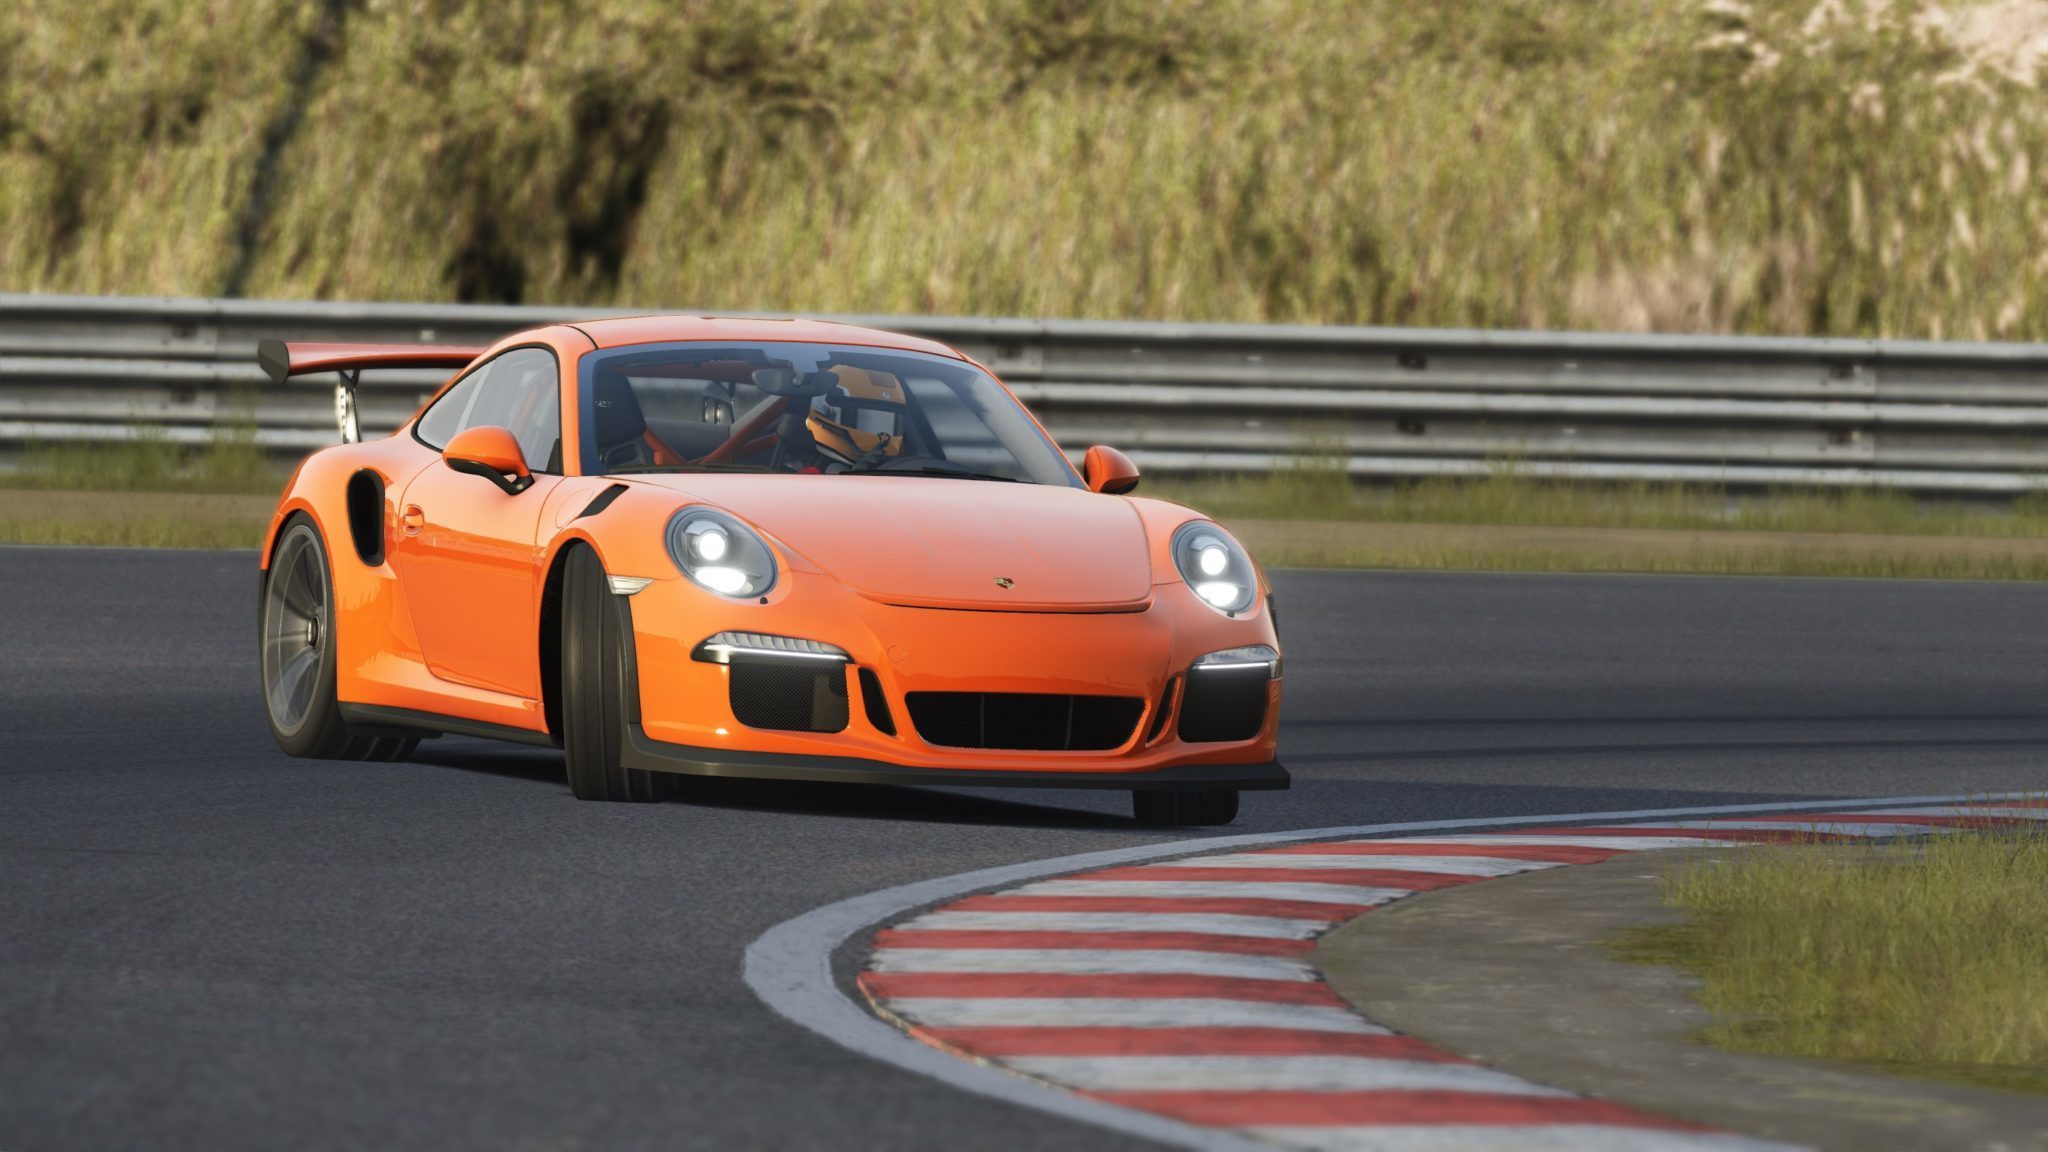 Assetto Corsa: Drive a Porsche on the virtual race track - Porsche Newsroom